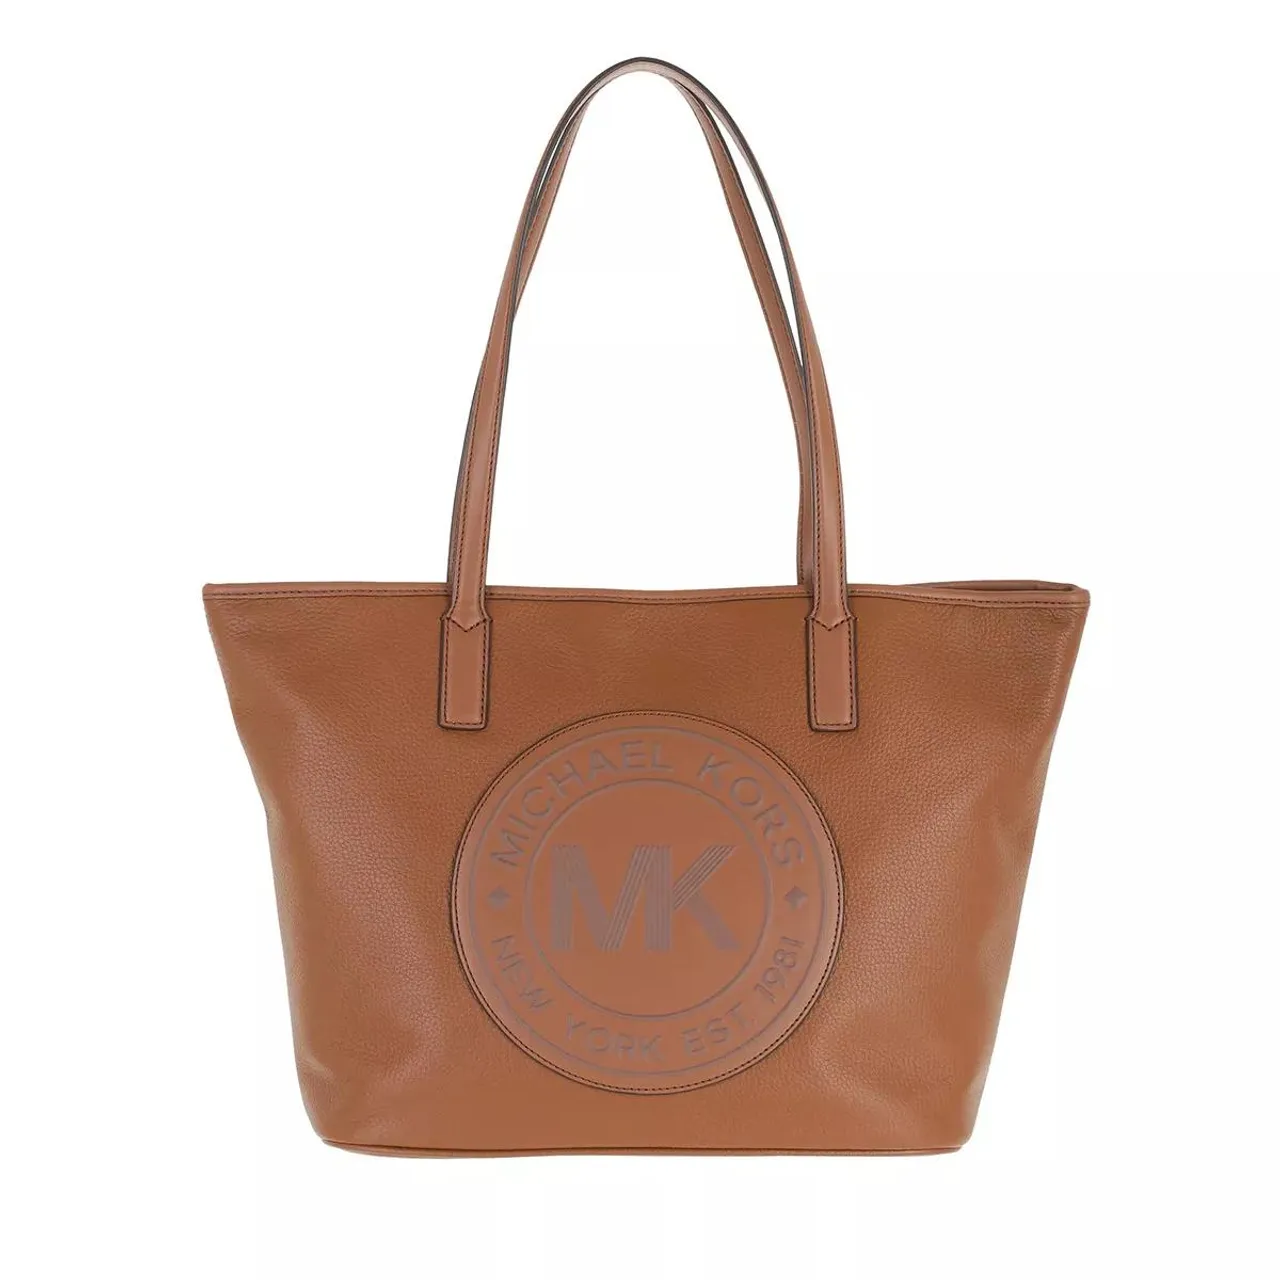 Michael Kors Tote Bags - Medium Tz Tote - cognac - Tote Bags for ladies